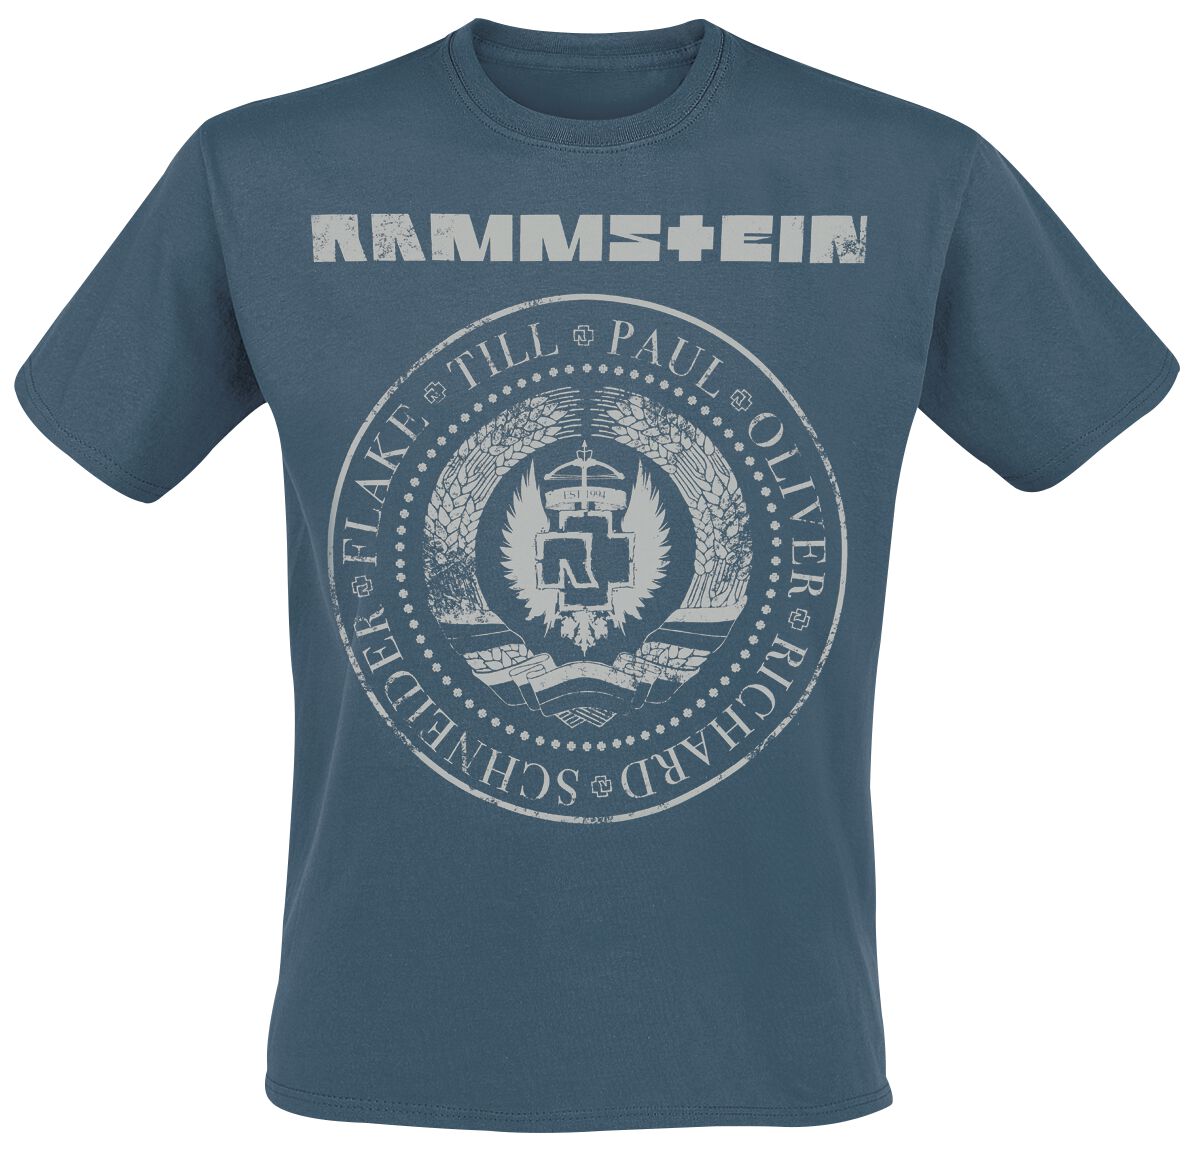 Rammstein T-Shirt - Est. 1994 - S bis XXL - für Männer - Größe XL - blau  - Lizenziertes Merchandise!